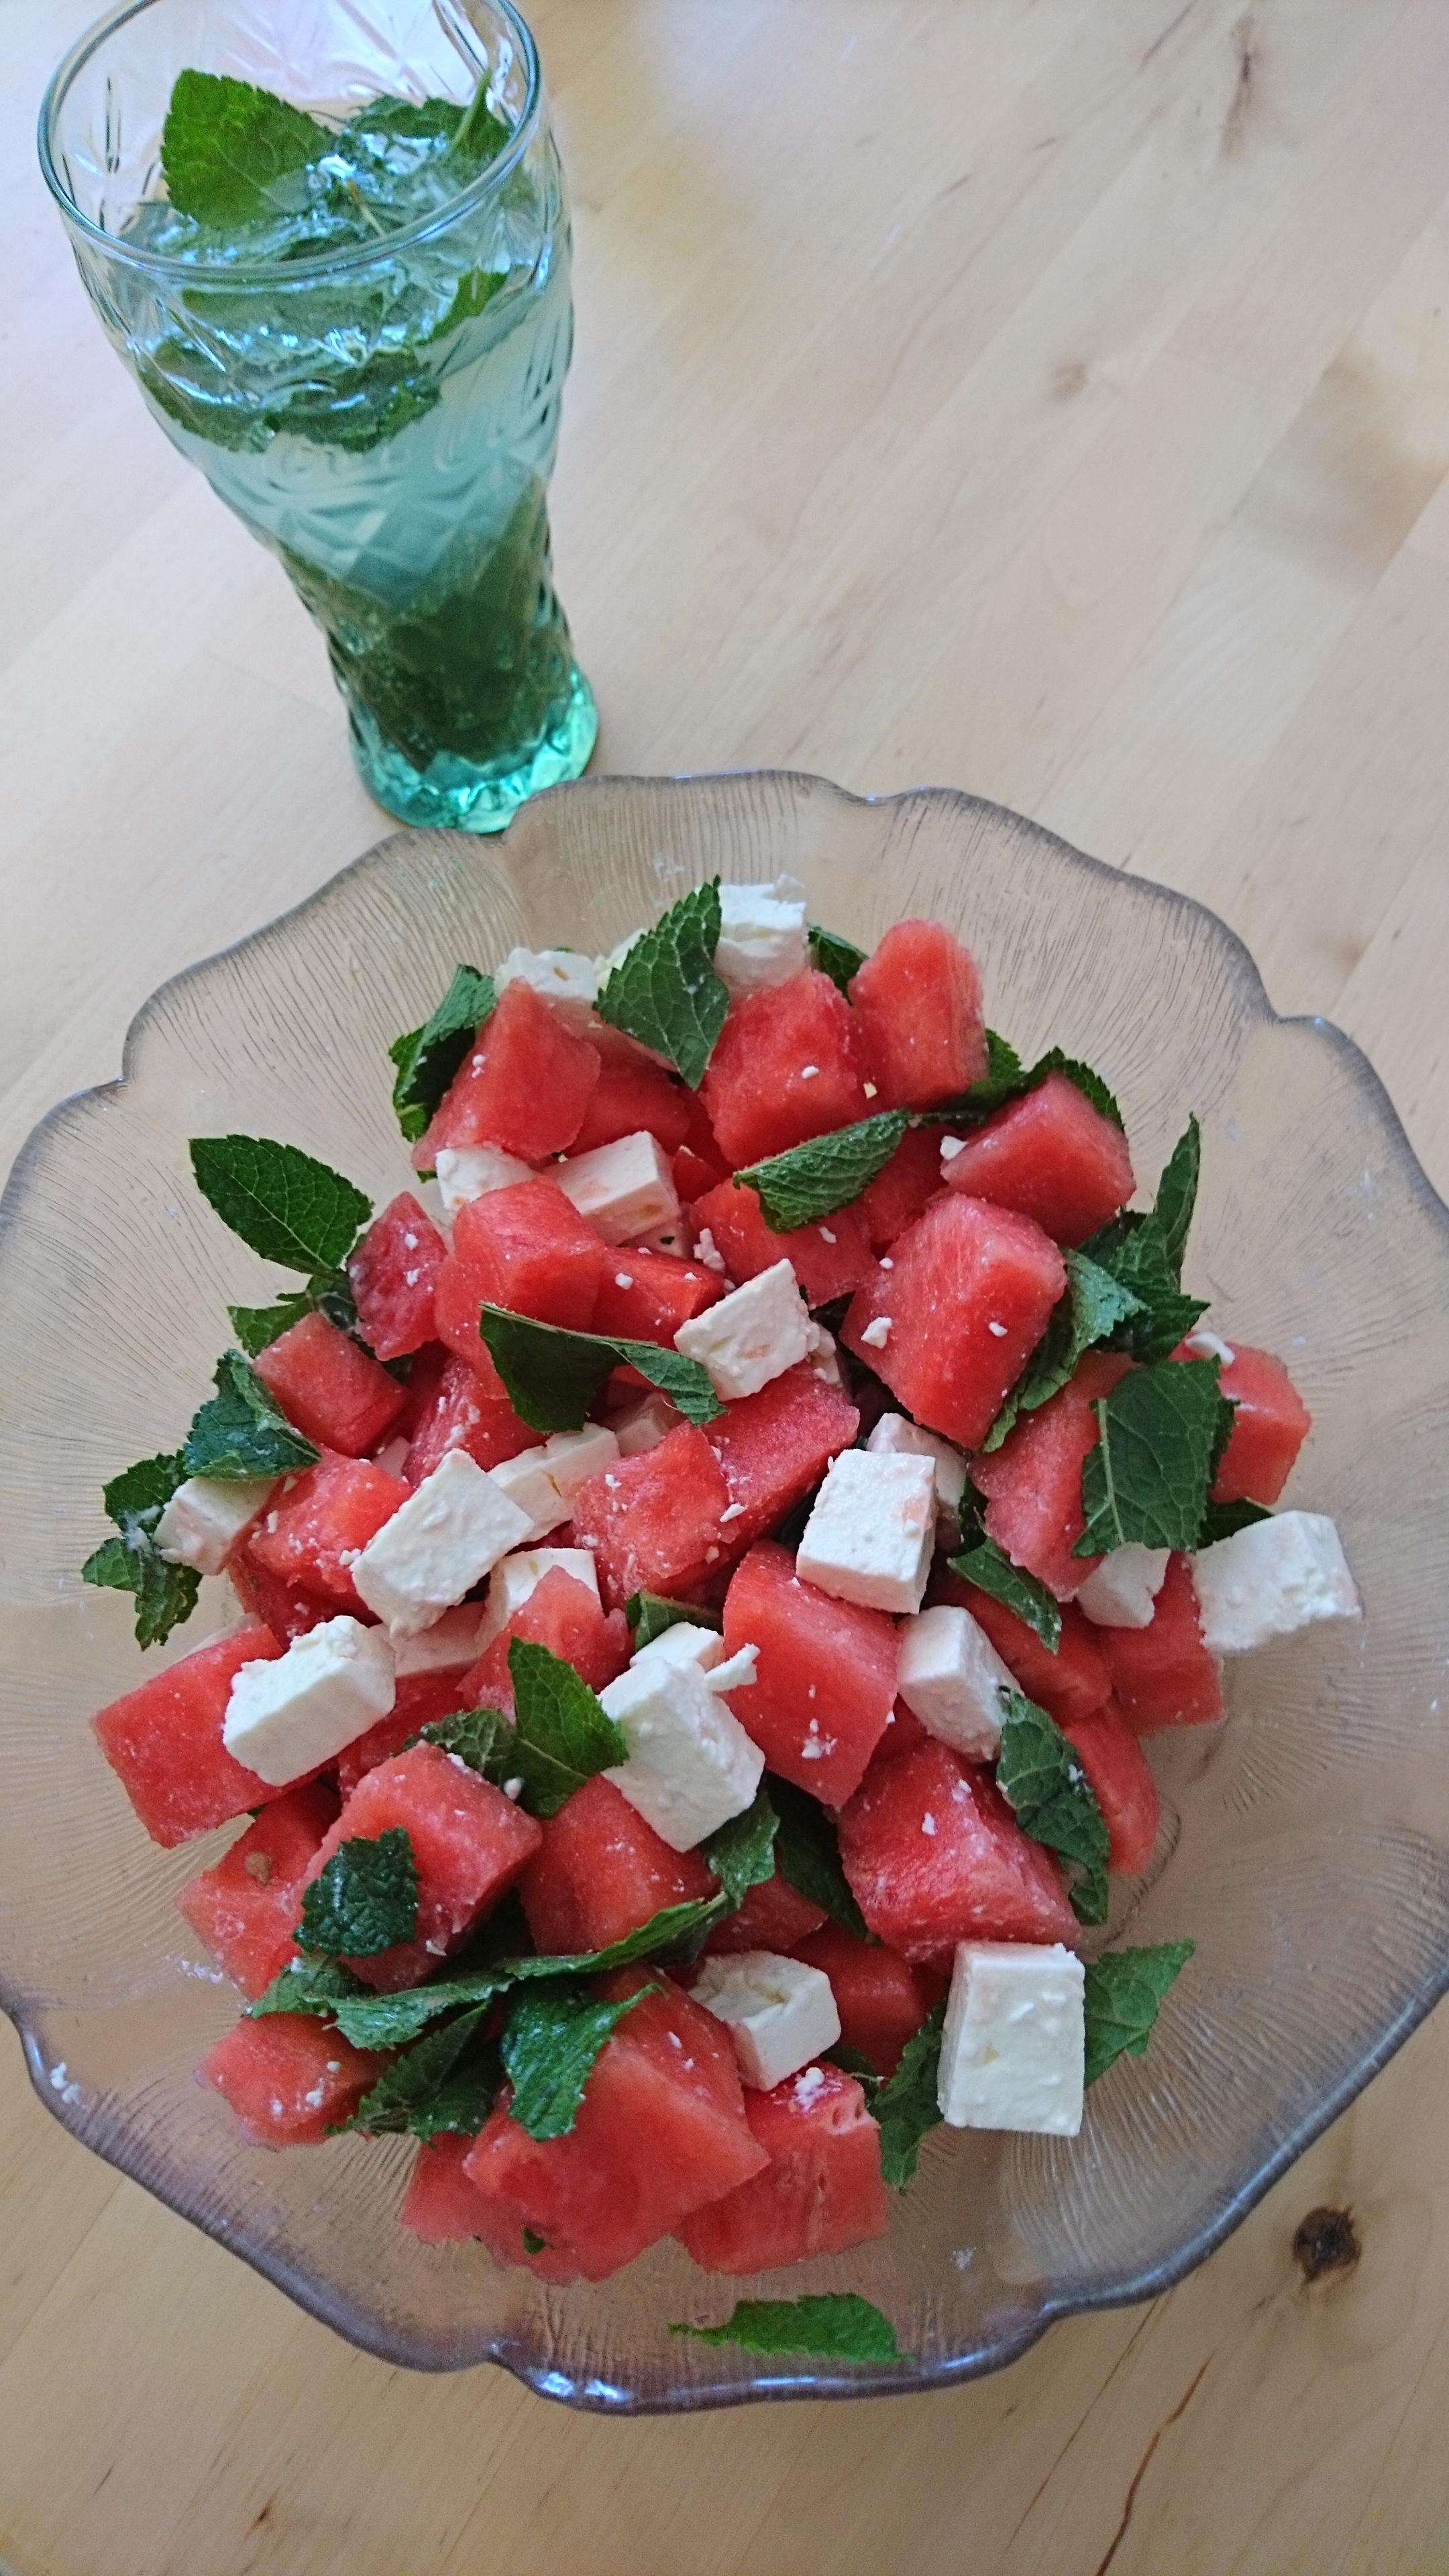 Heute gibt es #Wassermelone 🍉
Als Salat mit Feta und frischer Minze

#healthy #food